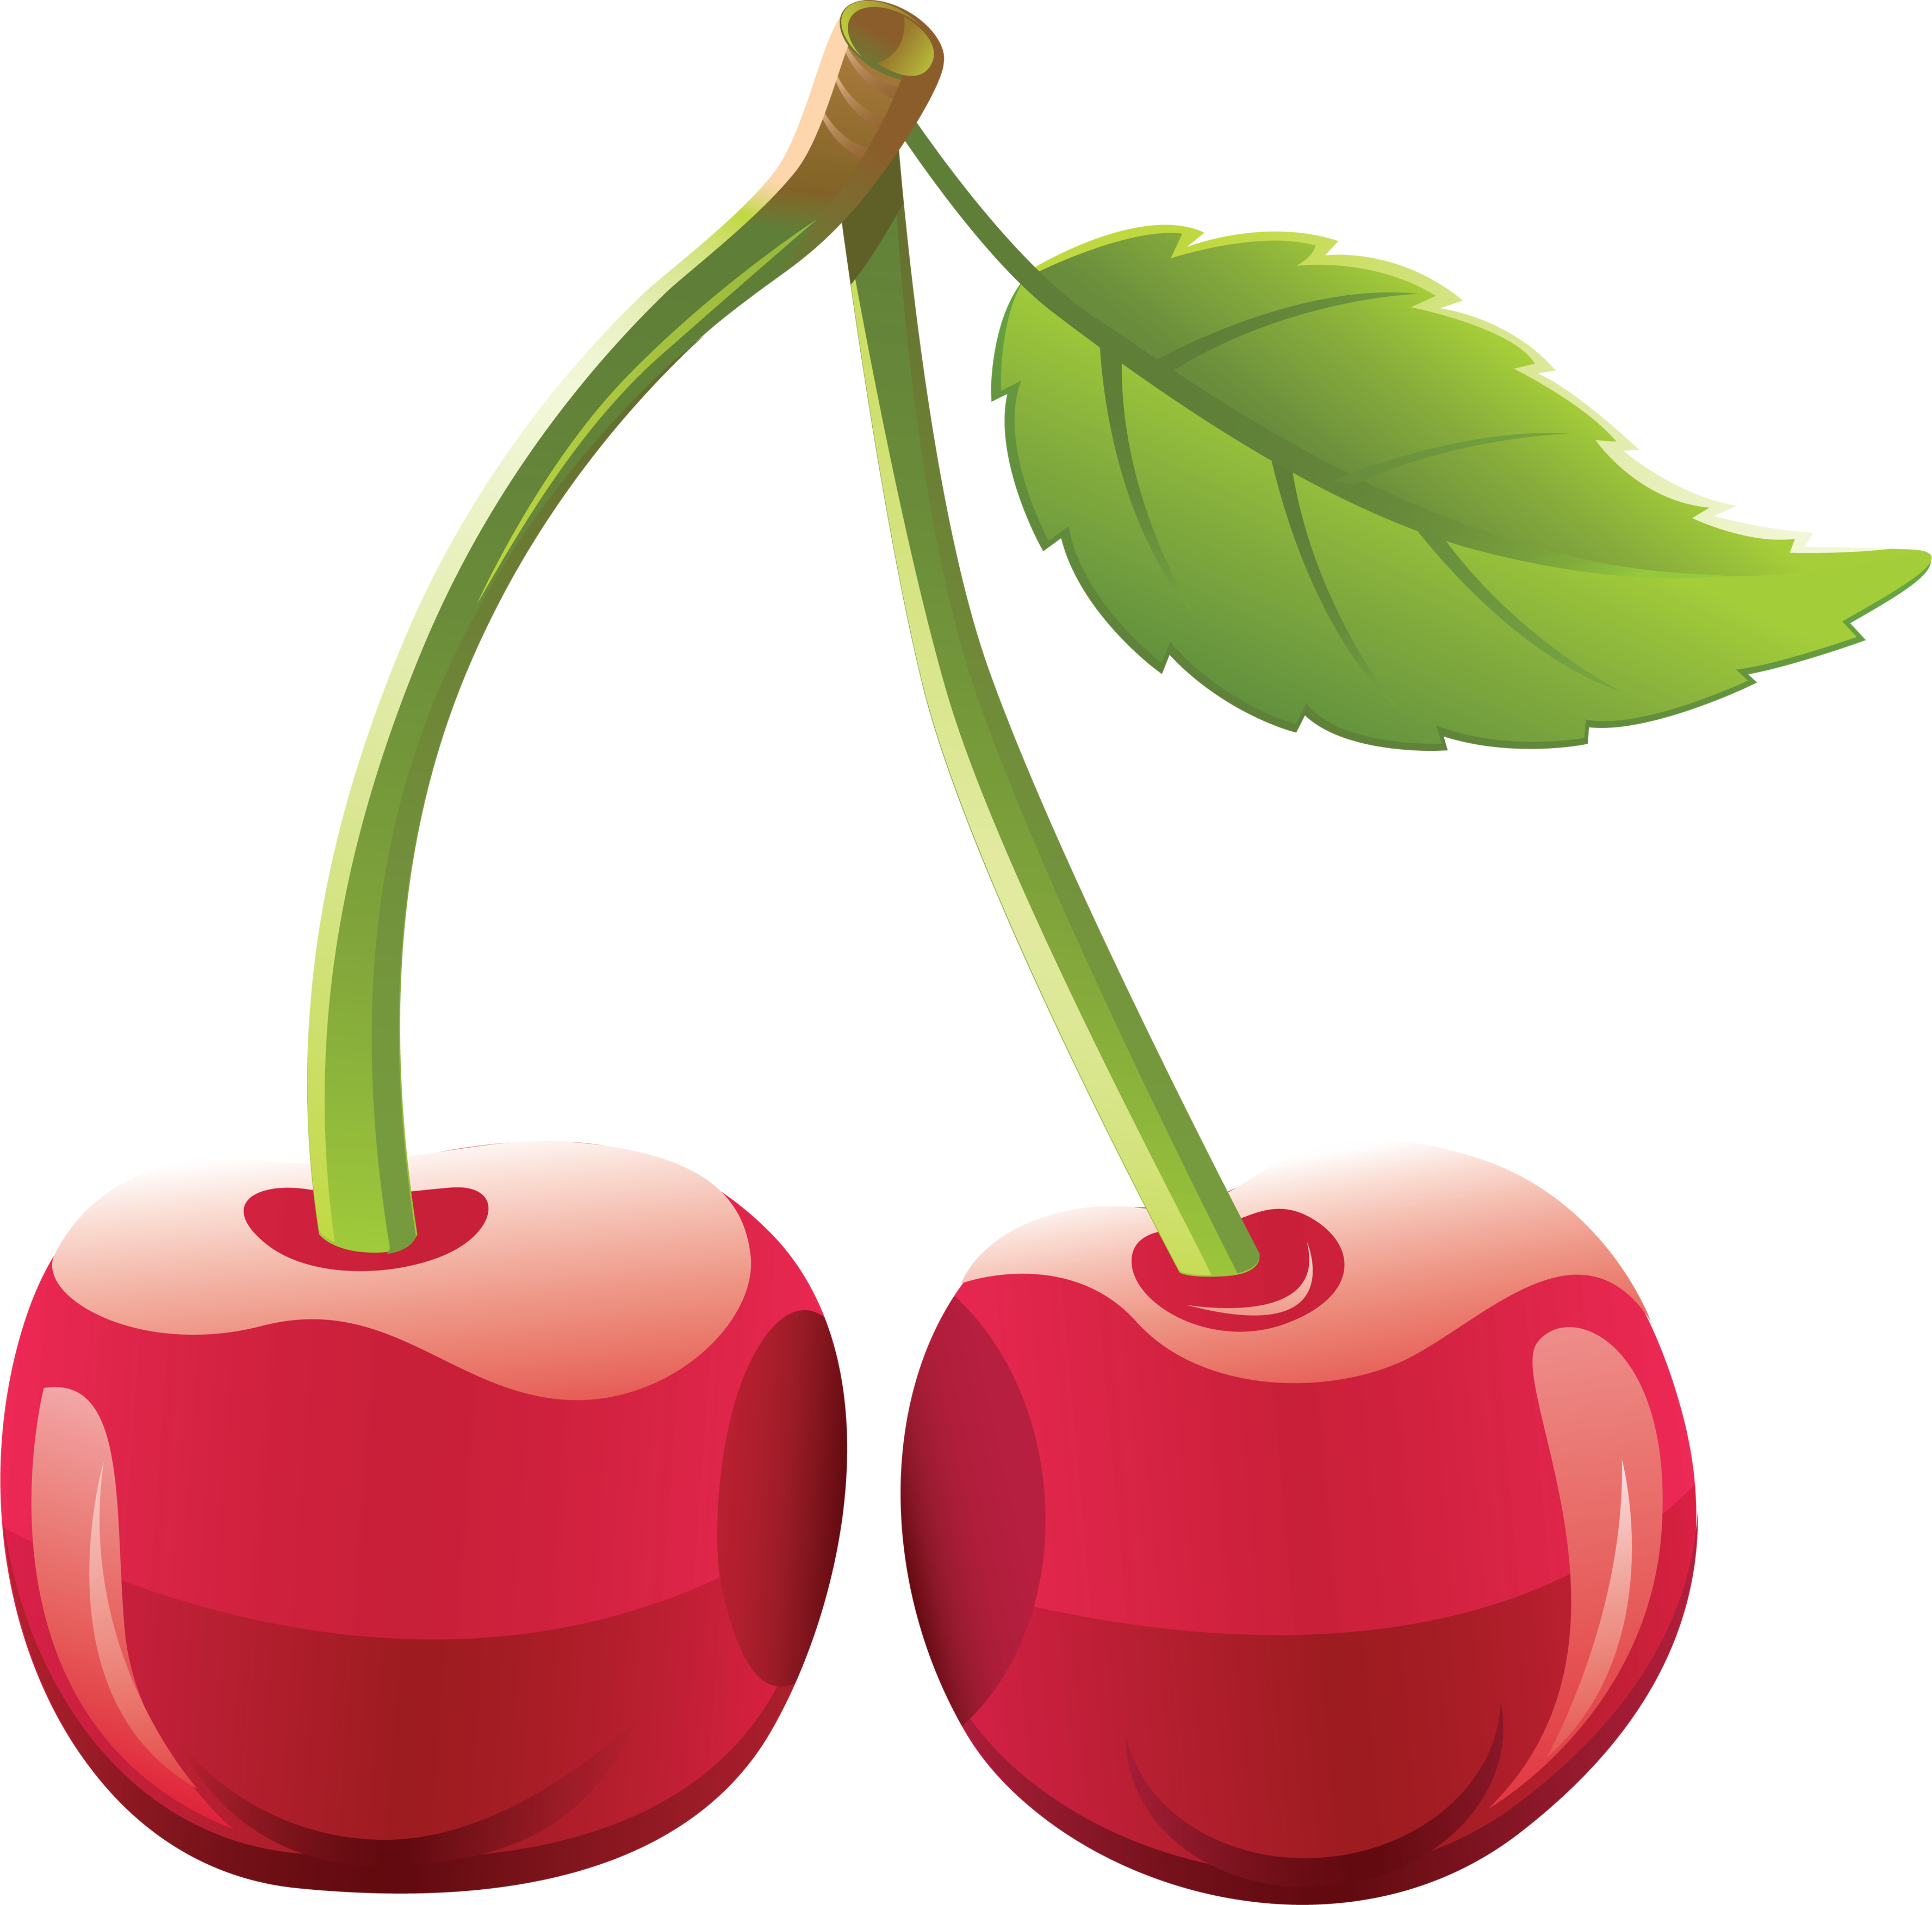 Cherries - Fruit Vector (3553x3504)